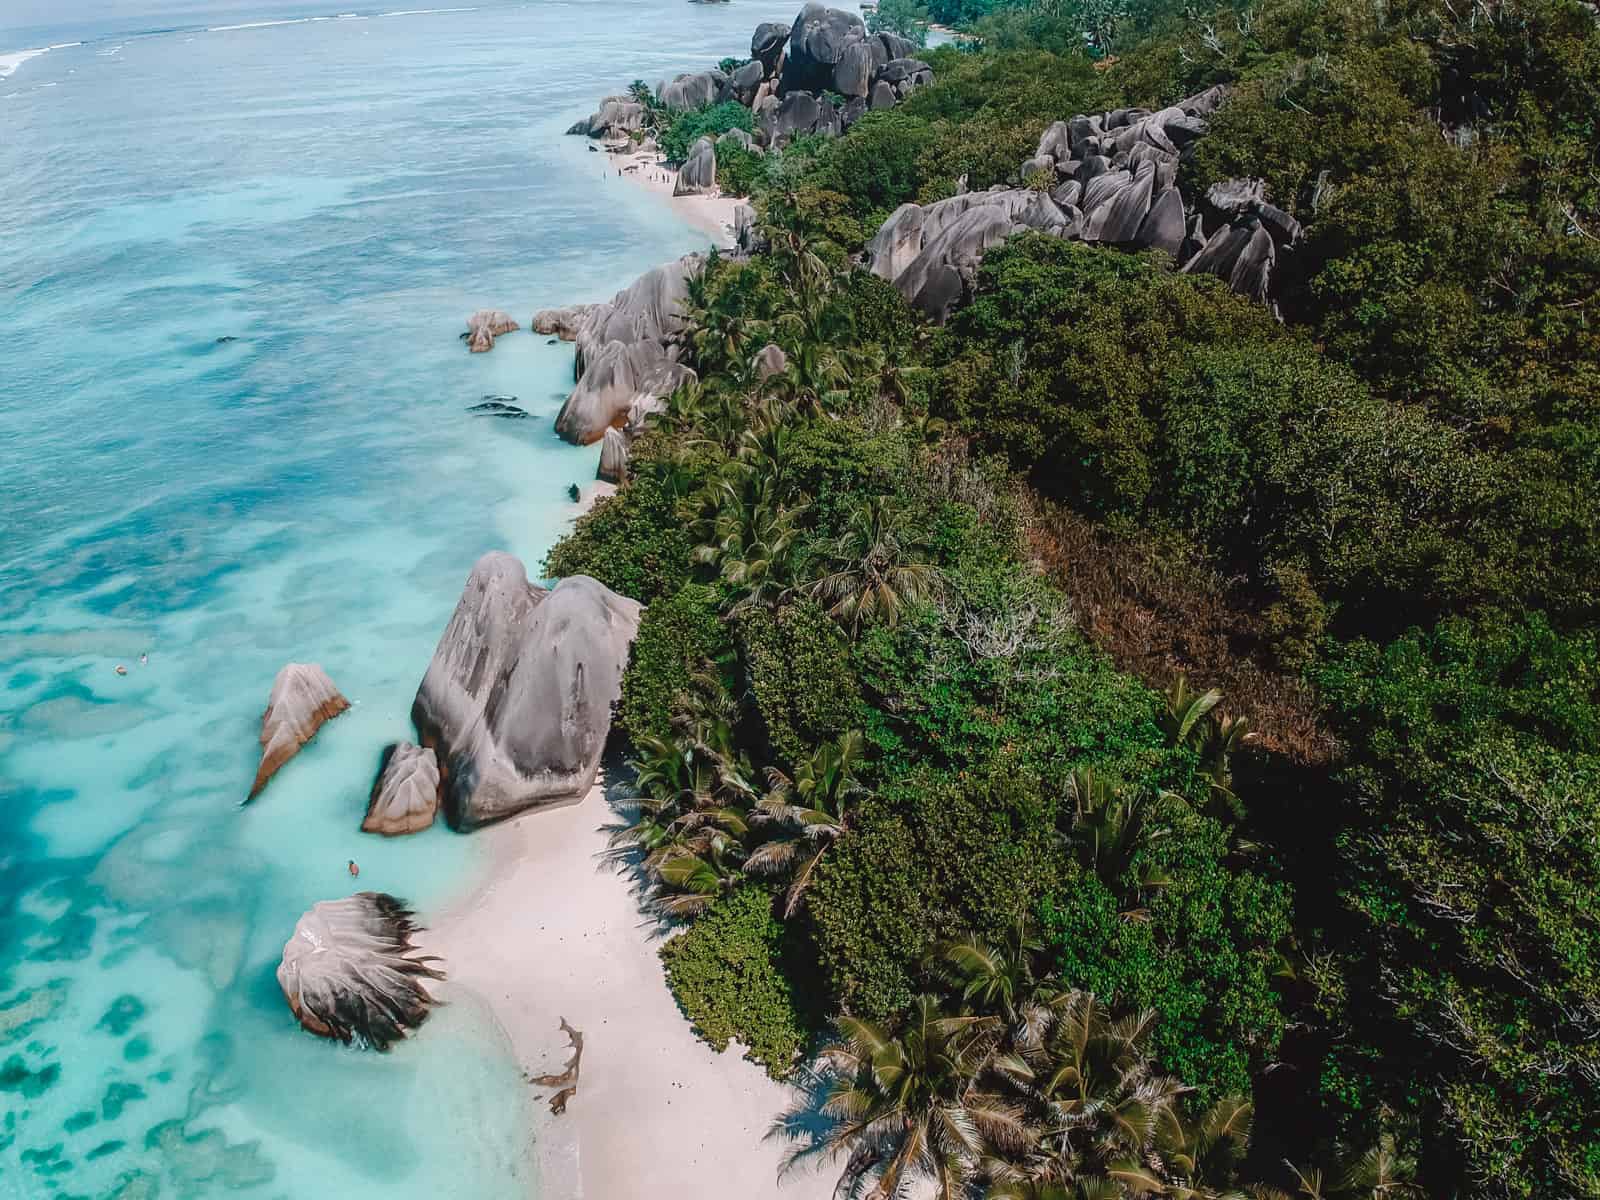 Most Instagrammable spots in Seychelles